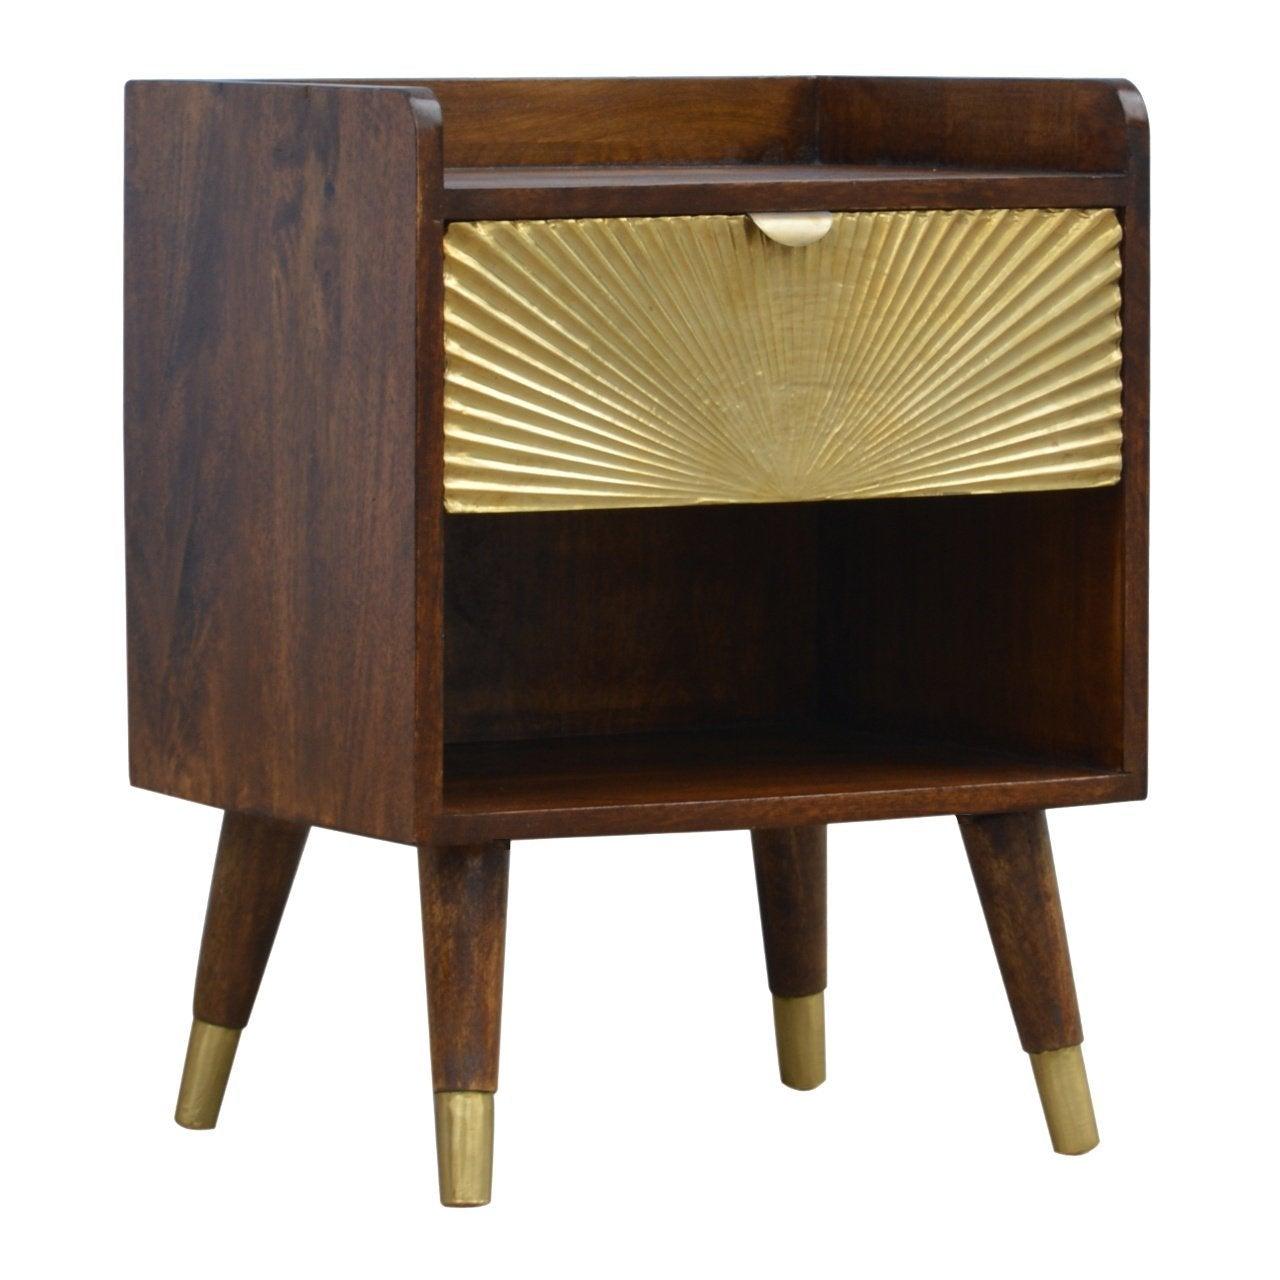 Manila gold 1 drawer bedside table - crimblefest furniture - image 3